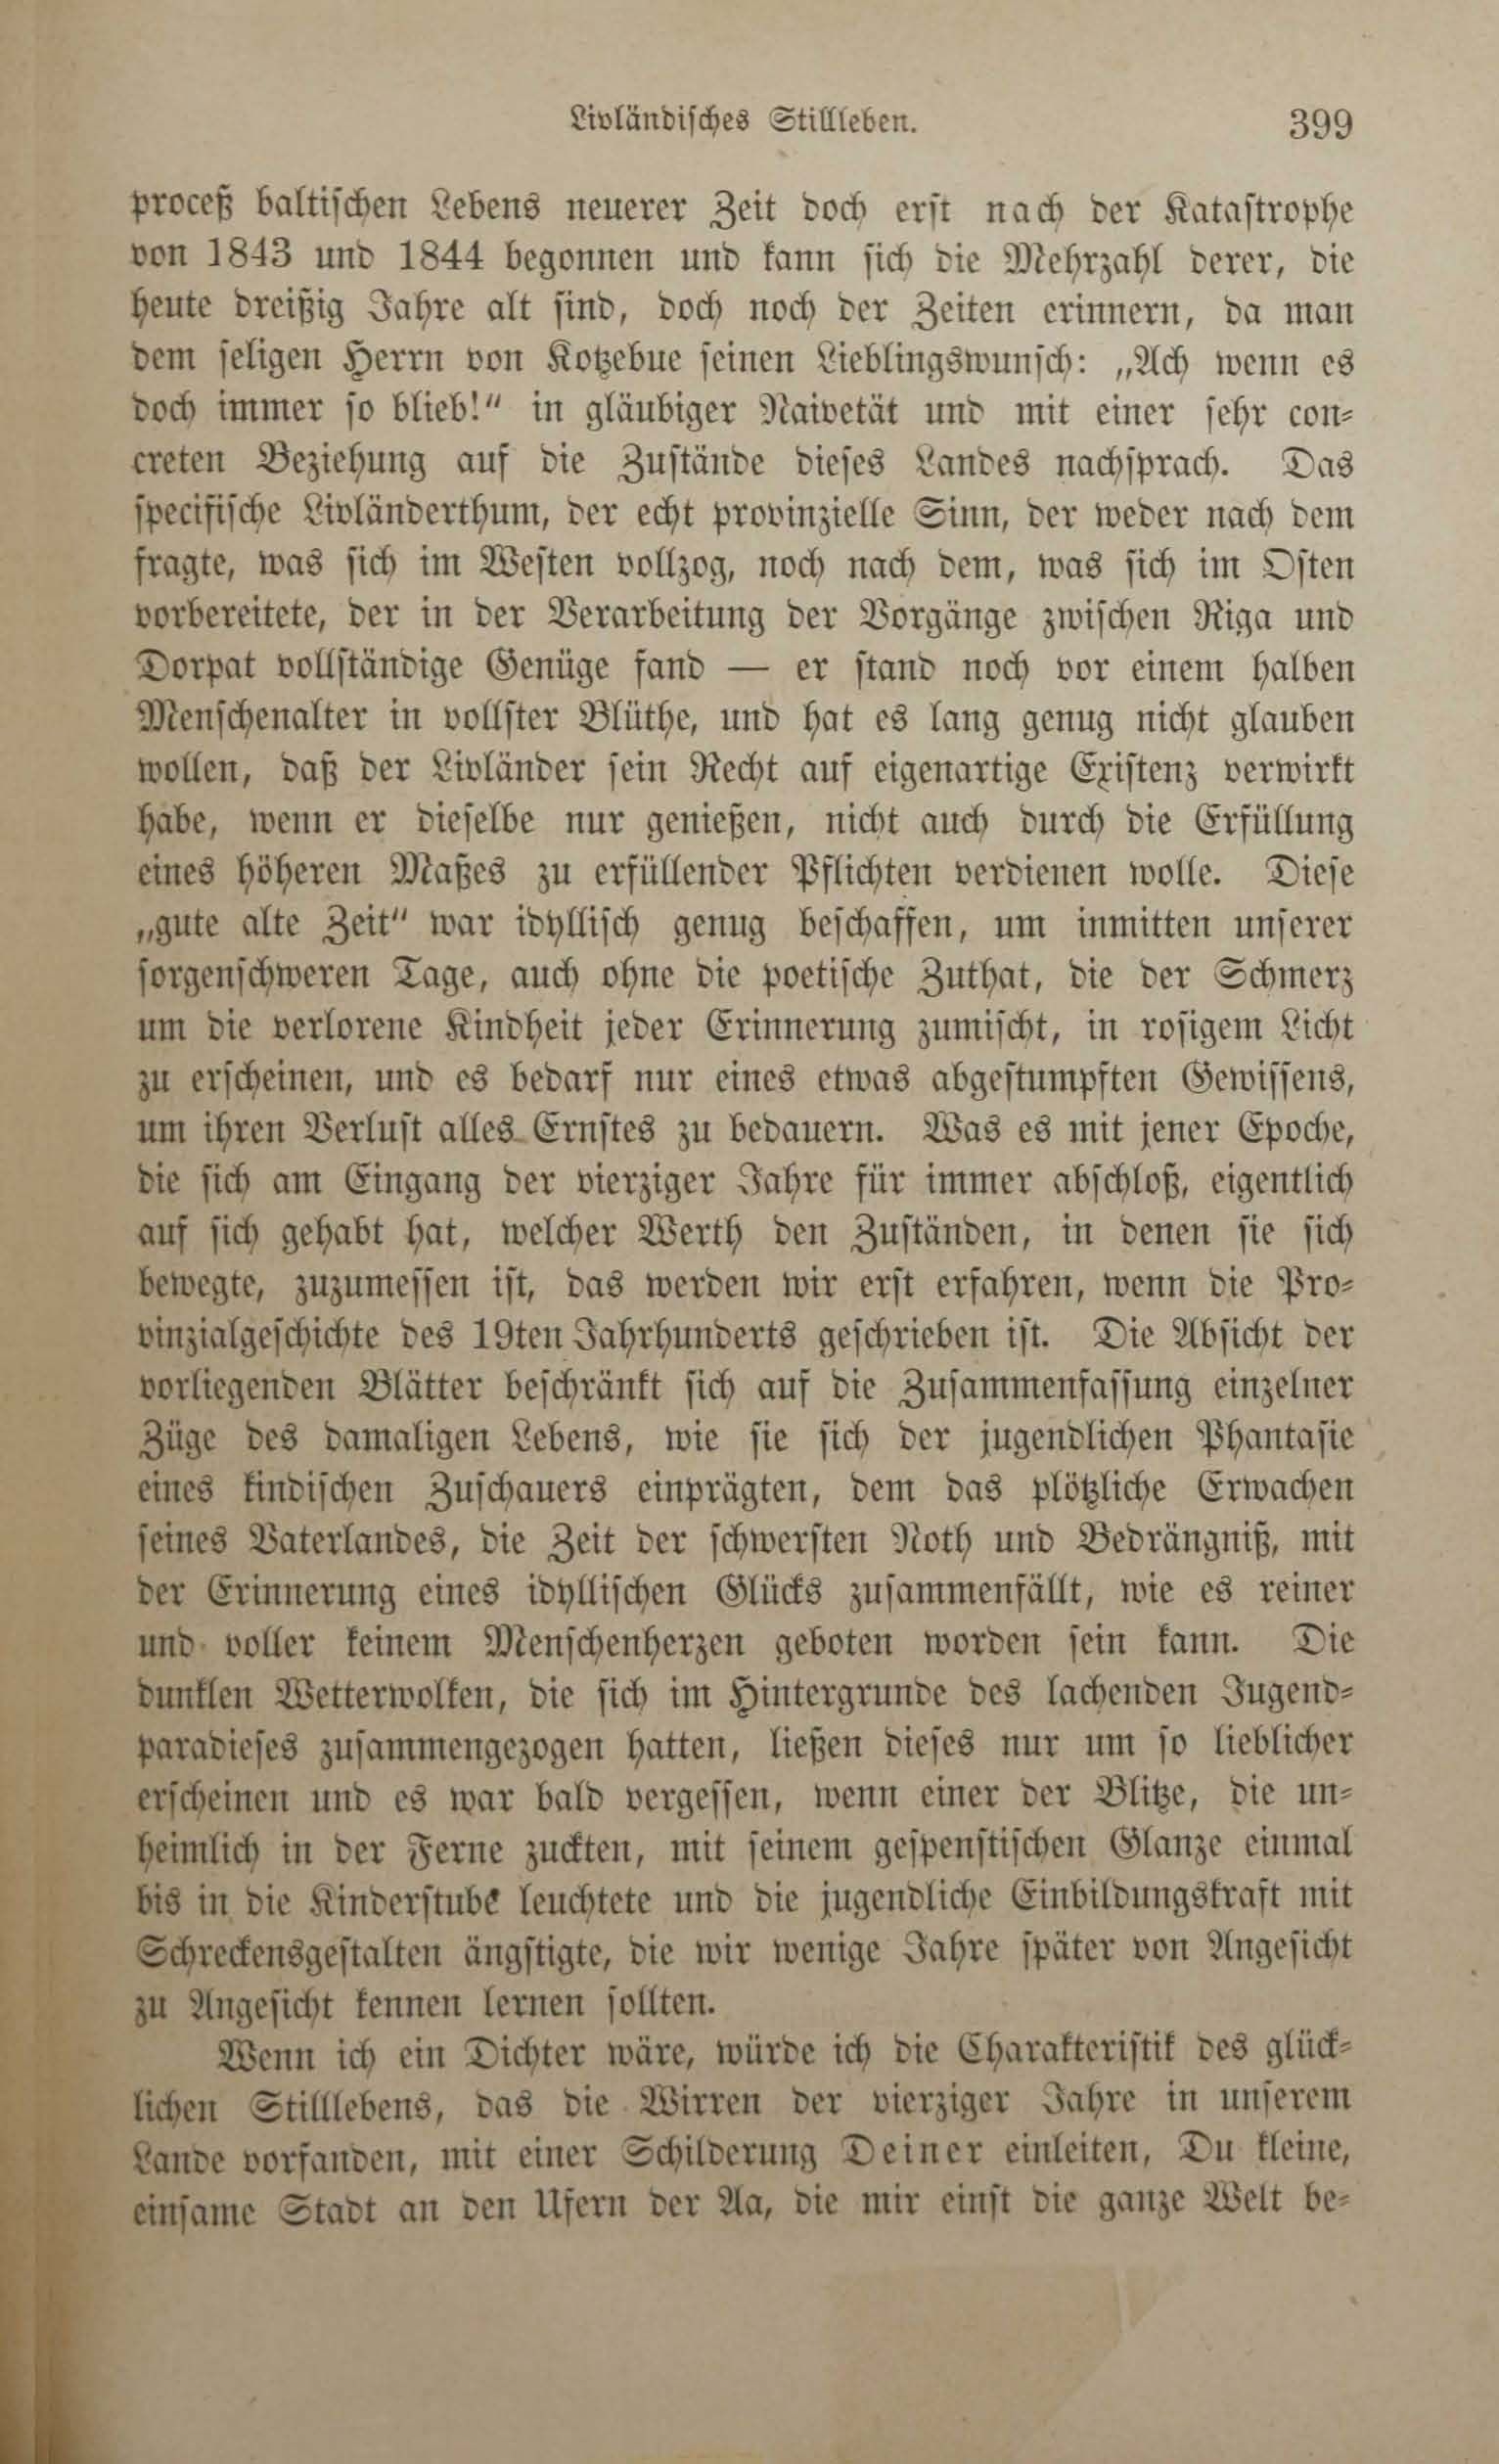 Die baltischen Provinzen Russlands (1869) | 406. (399) Main body of text